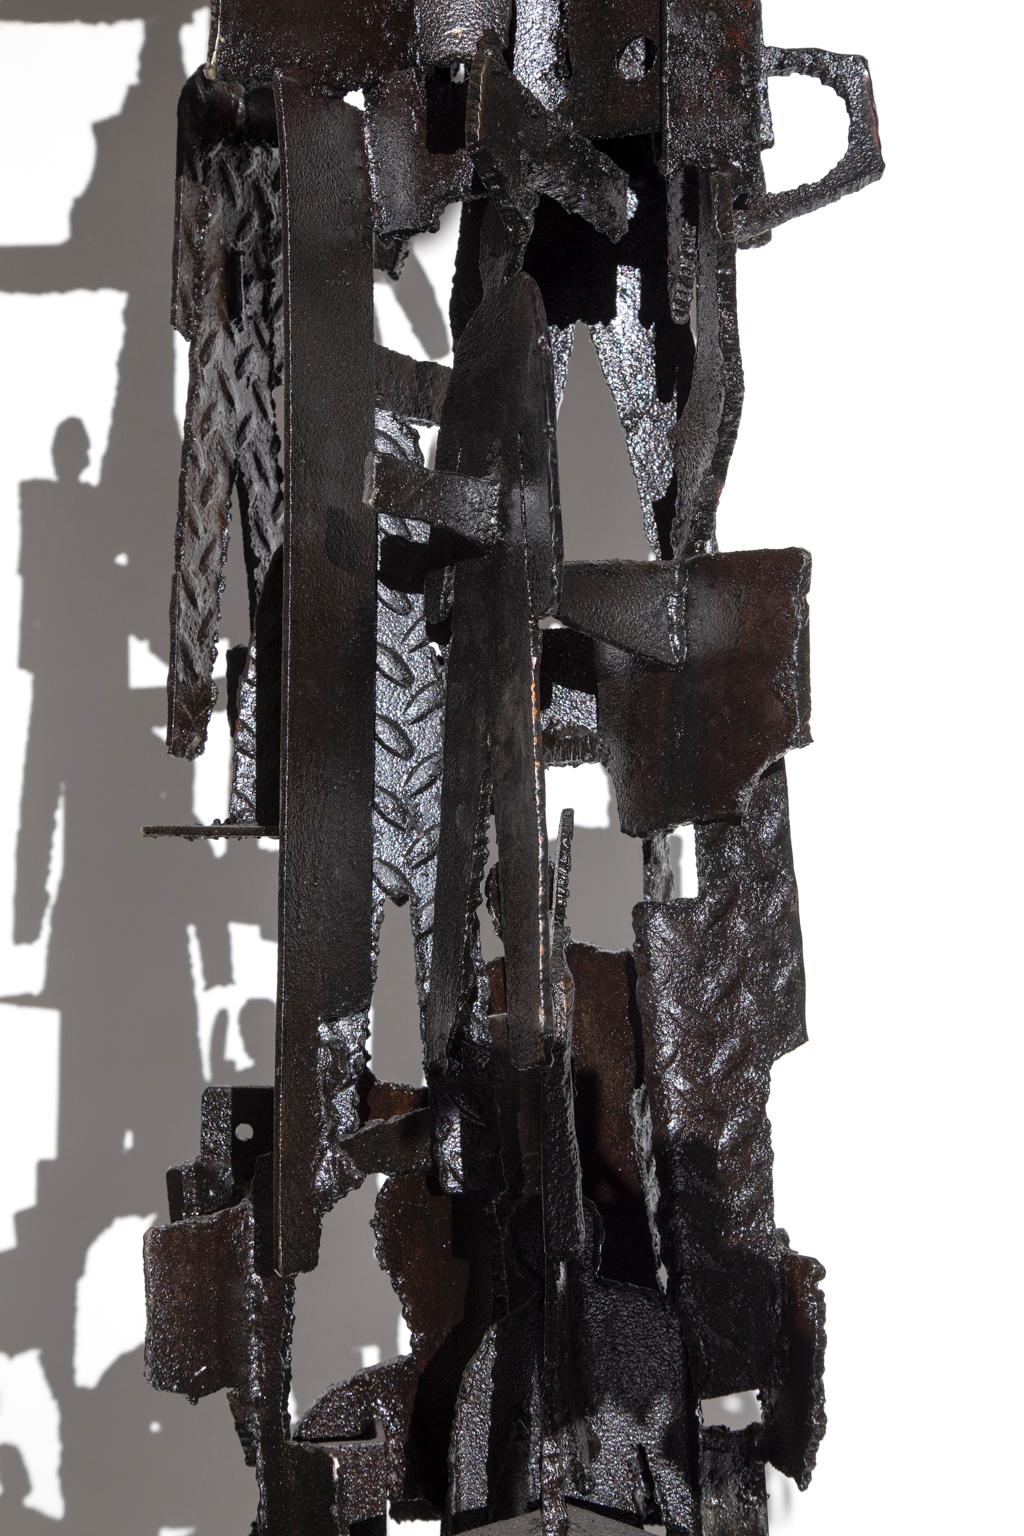 UNTITLED, Abstrakt/Figurative, schwarz geschweißter Stahl, Cass Corridor-Künstler, Detroit (Schwarz), Figurative Sculpture, von Robert Sestok